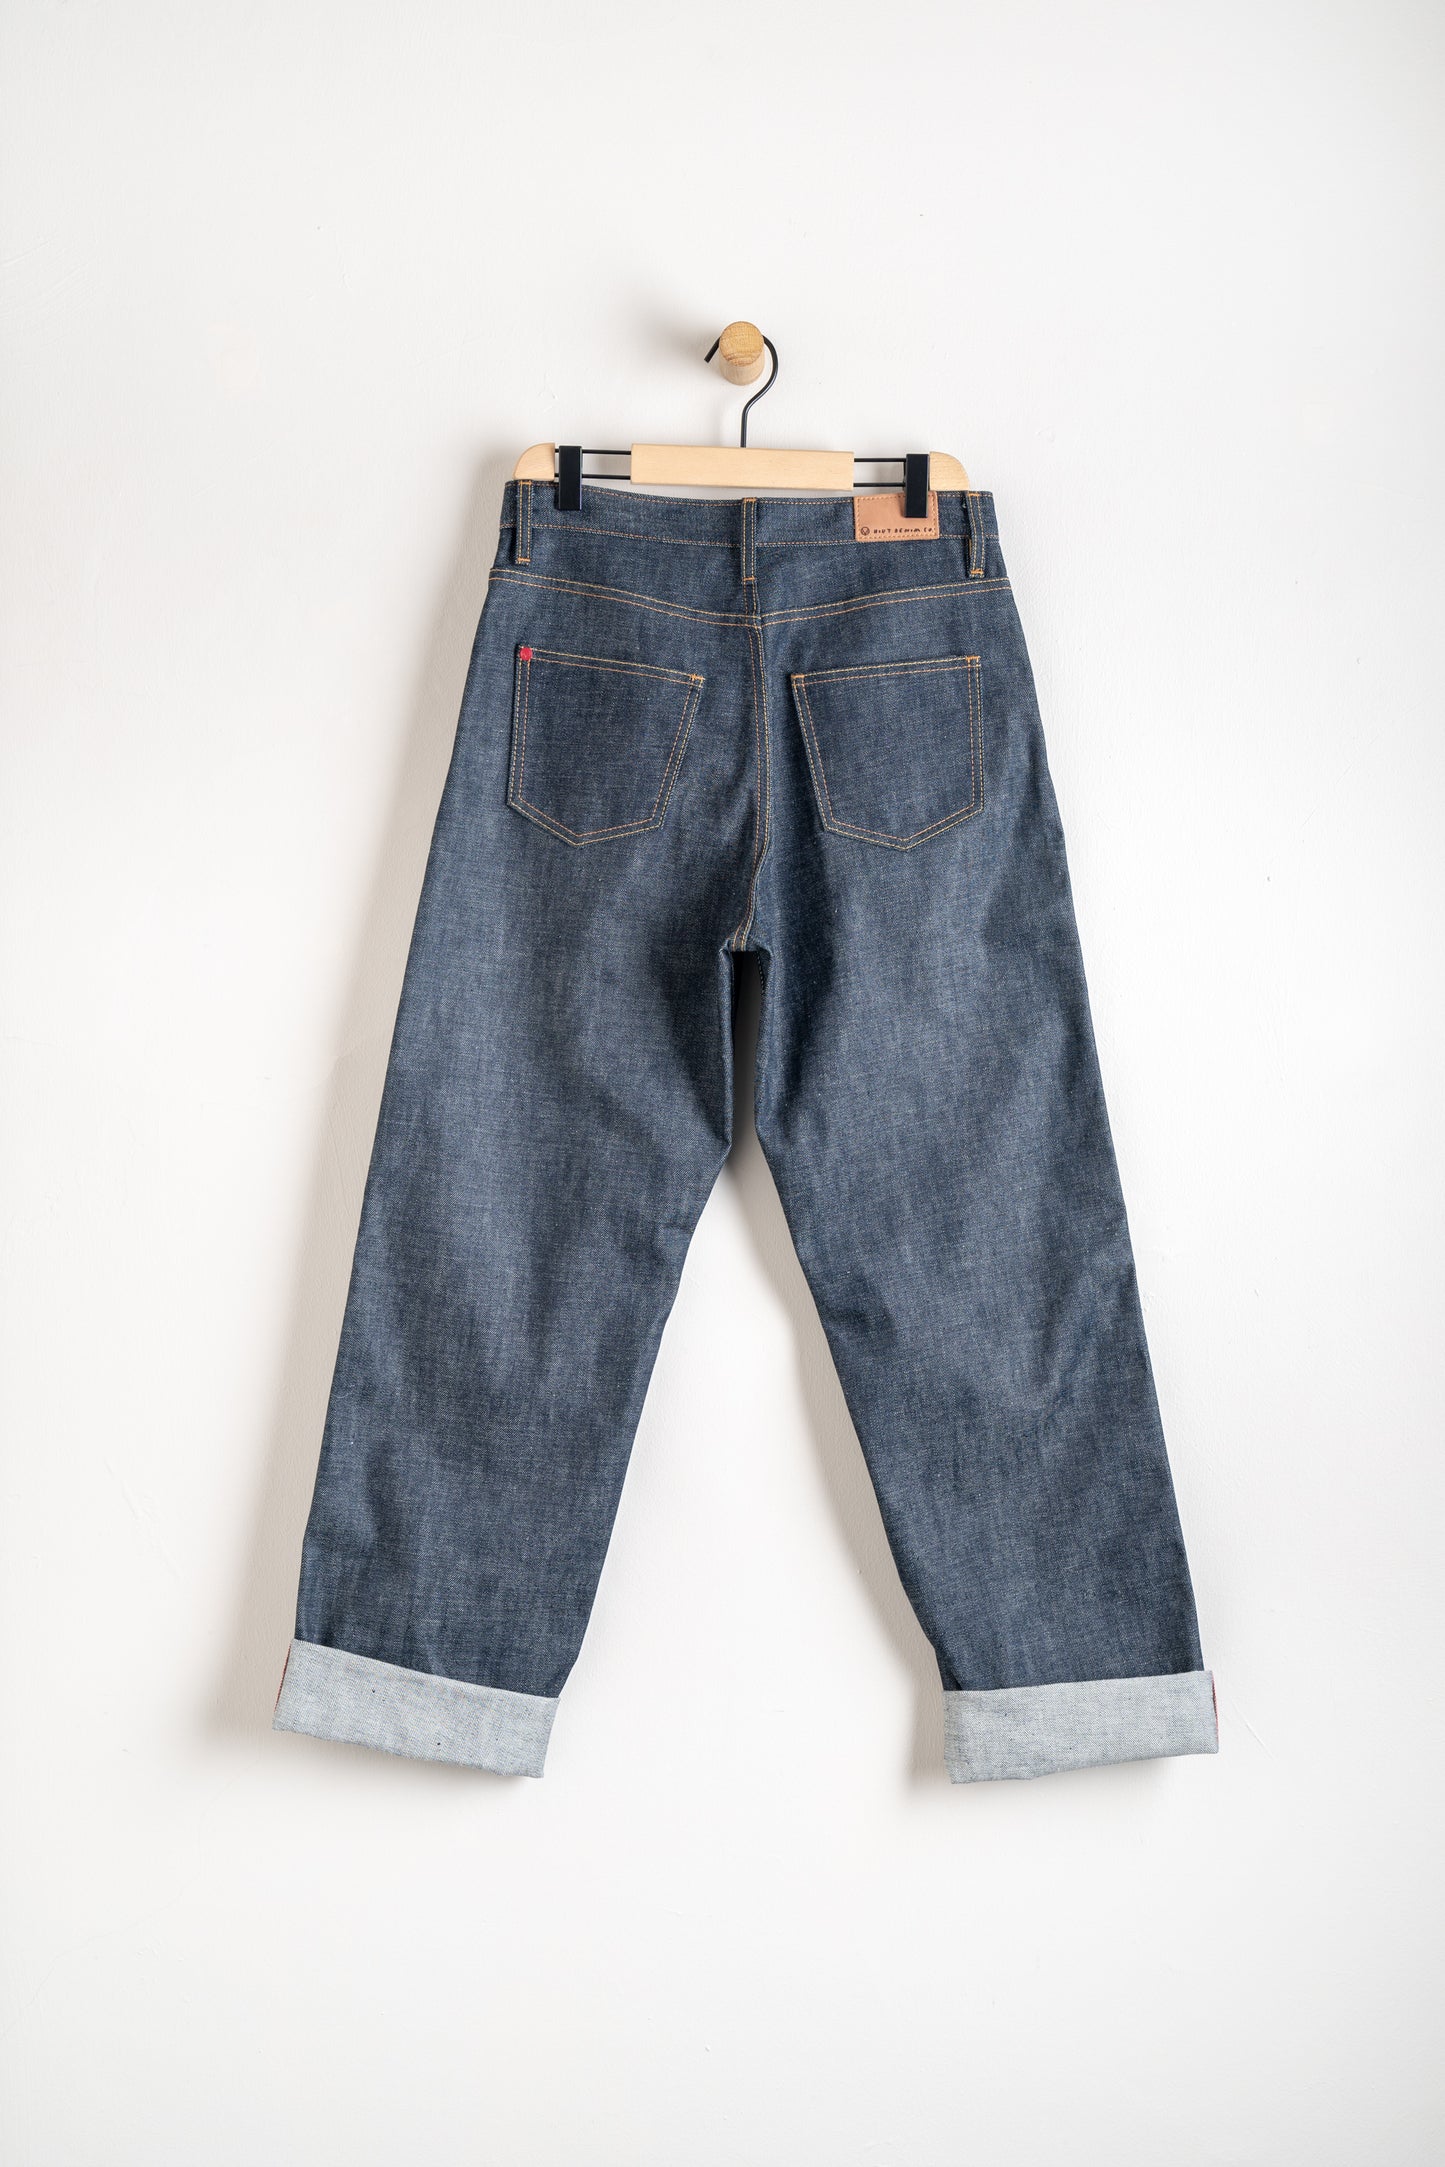 Hiut Denim Co. Cotton Peggy Selvedge Jeans